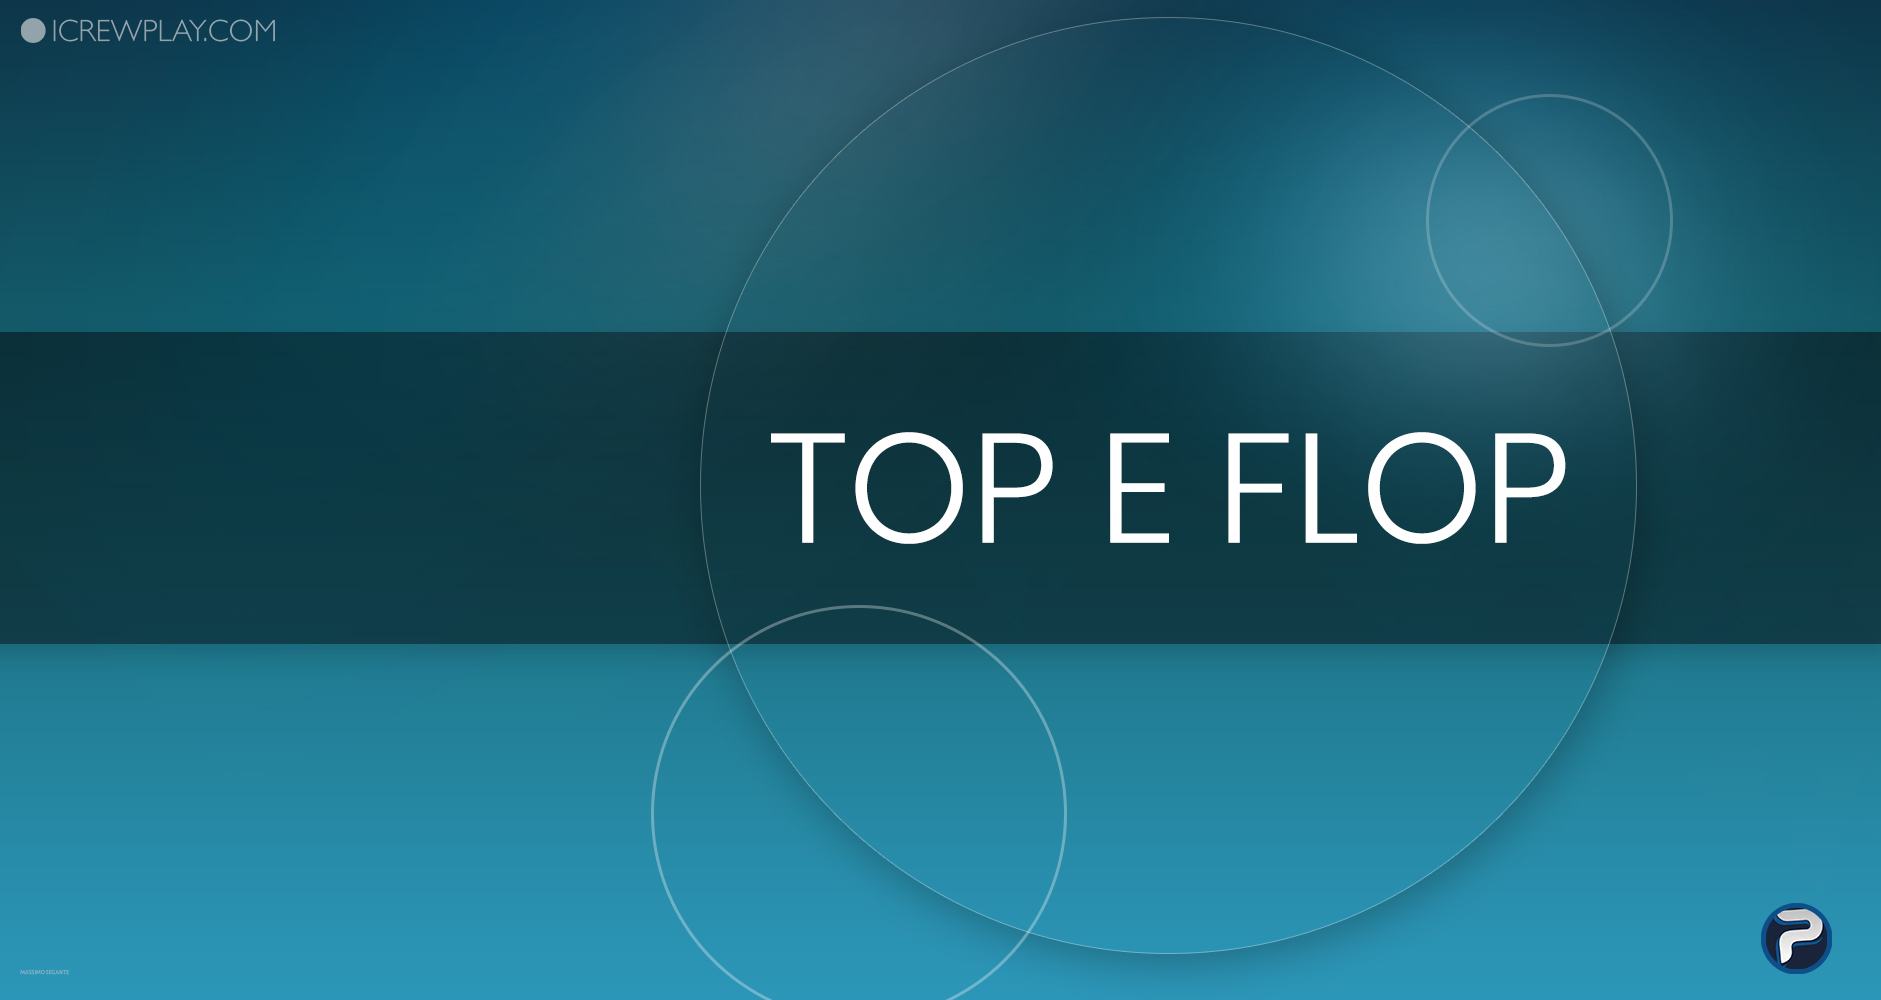 I "top" e i "flop" della settimana videoludica: 16 luglio - 22 luglio 2